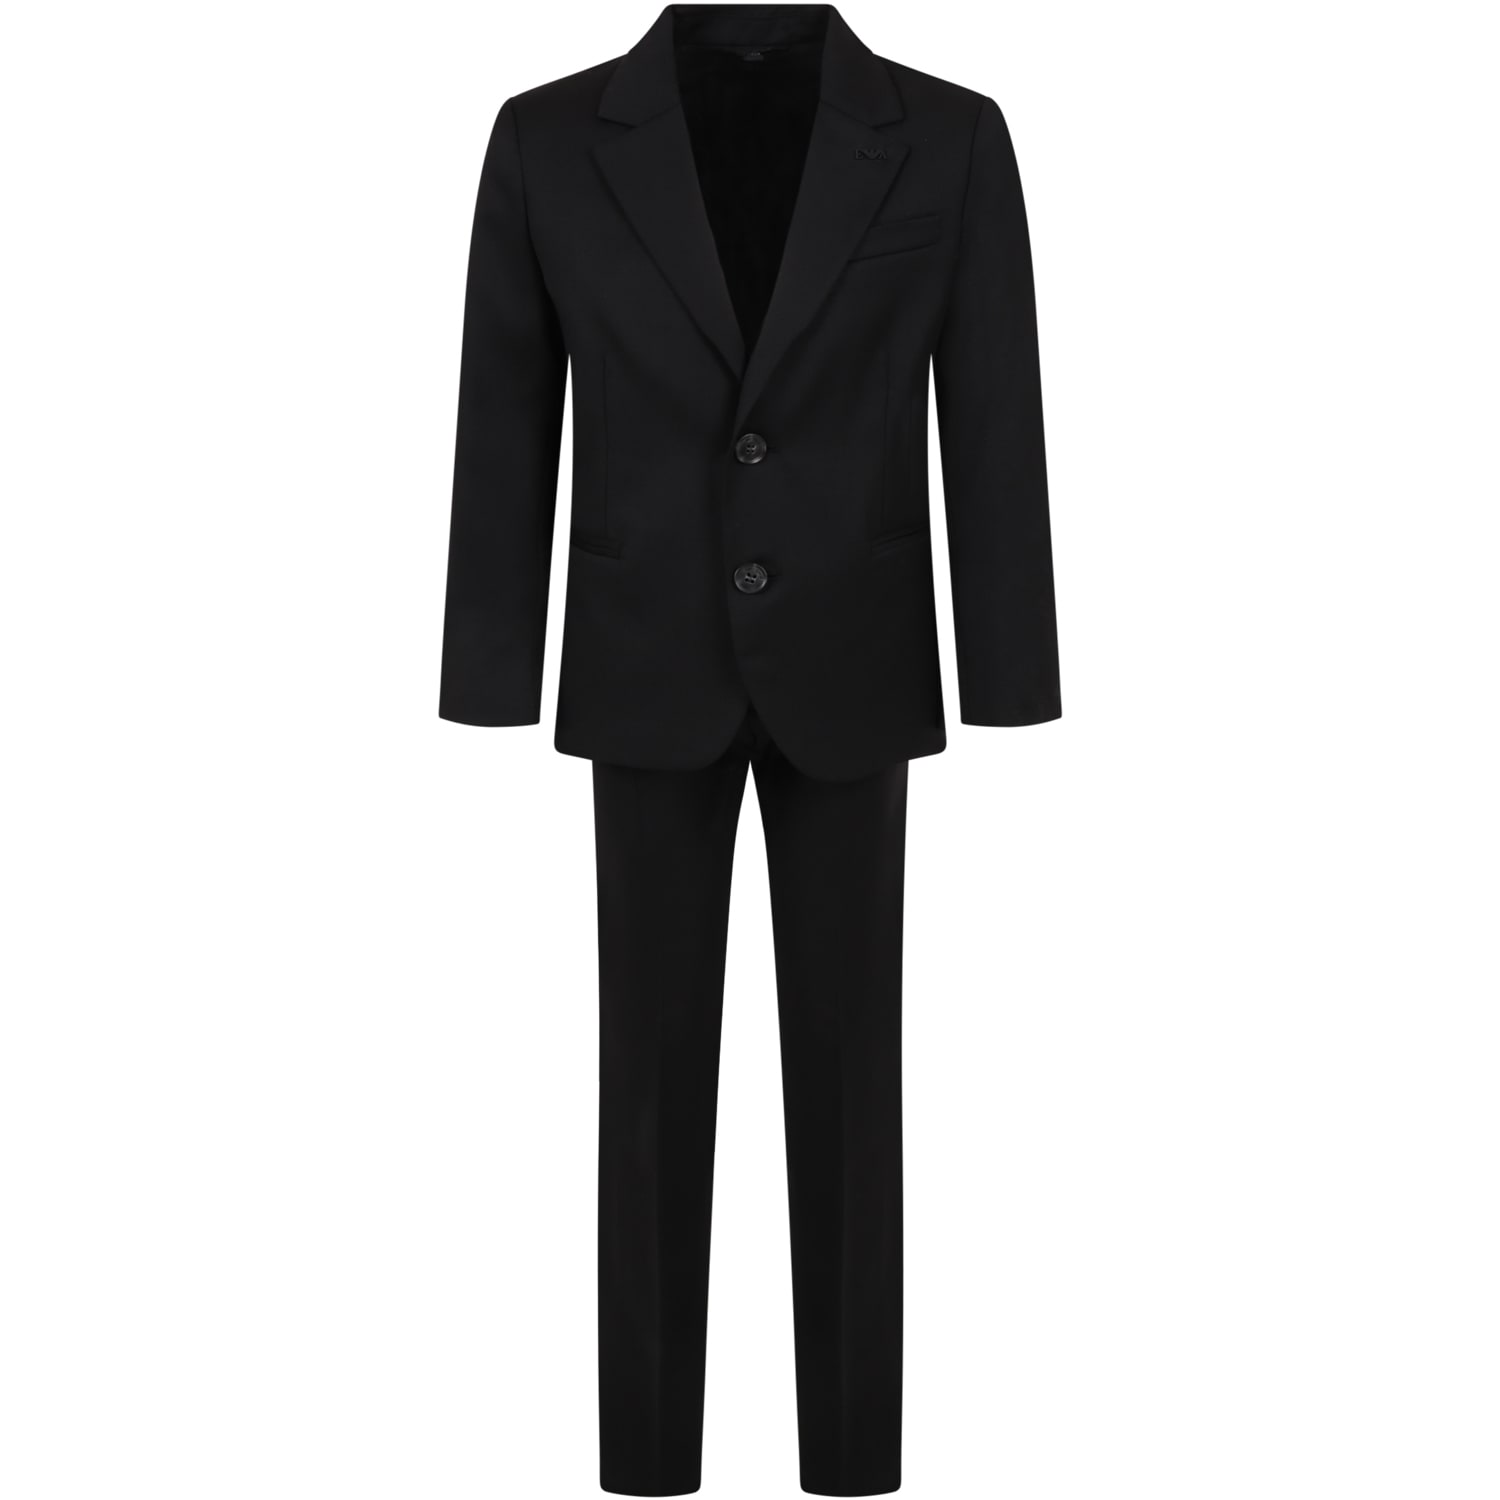 Armani Collezioni Black Suit For Boy